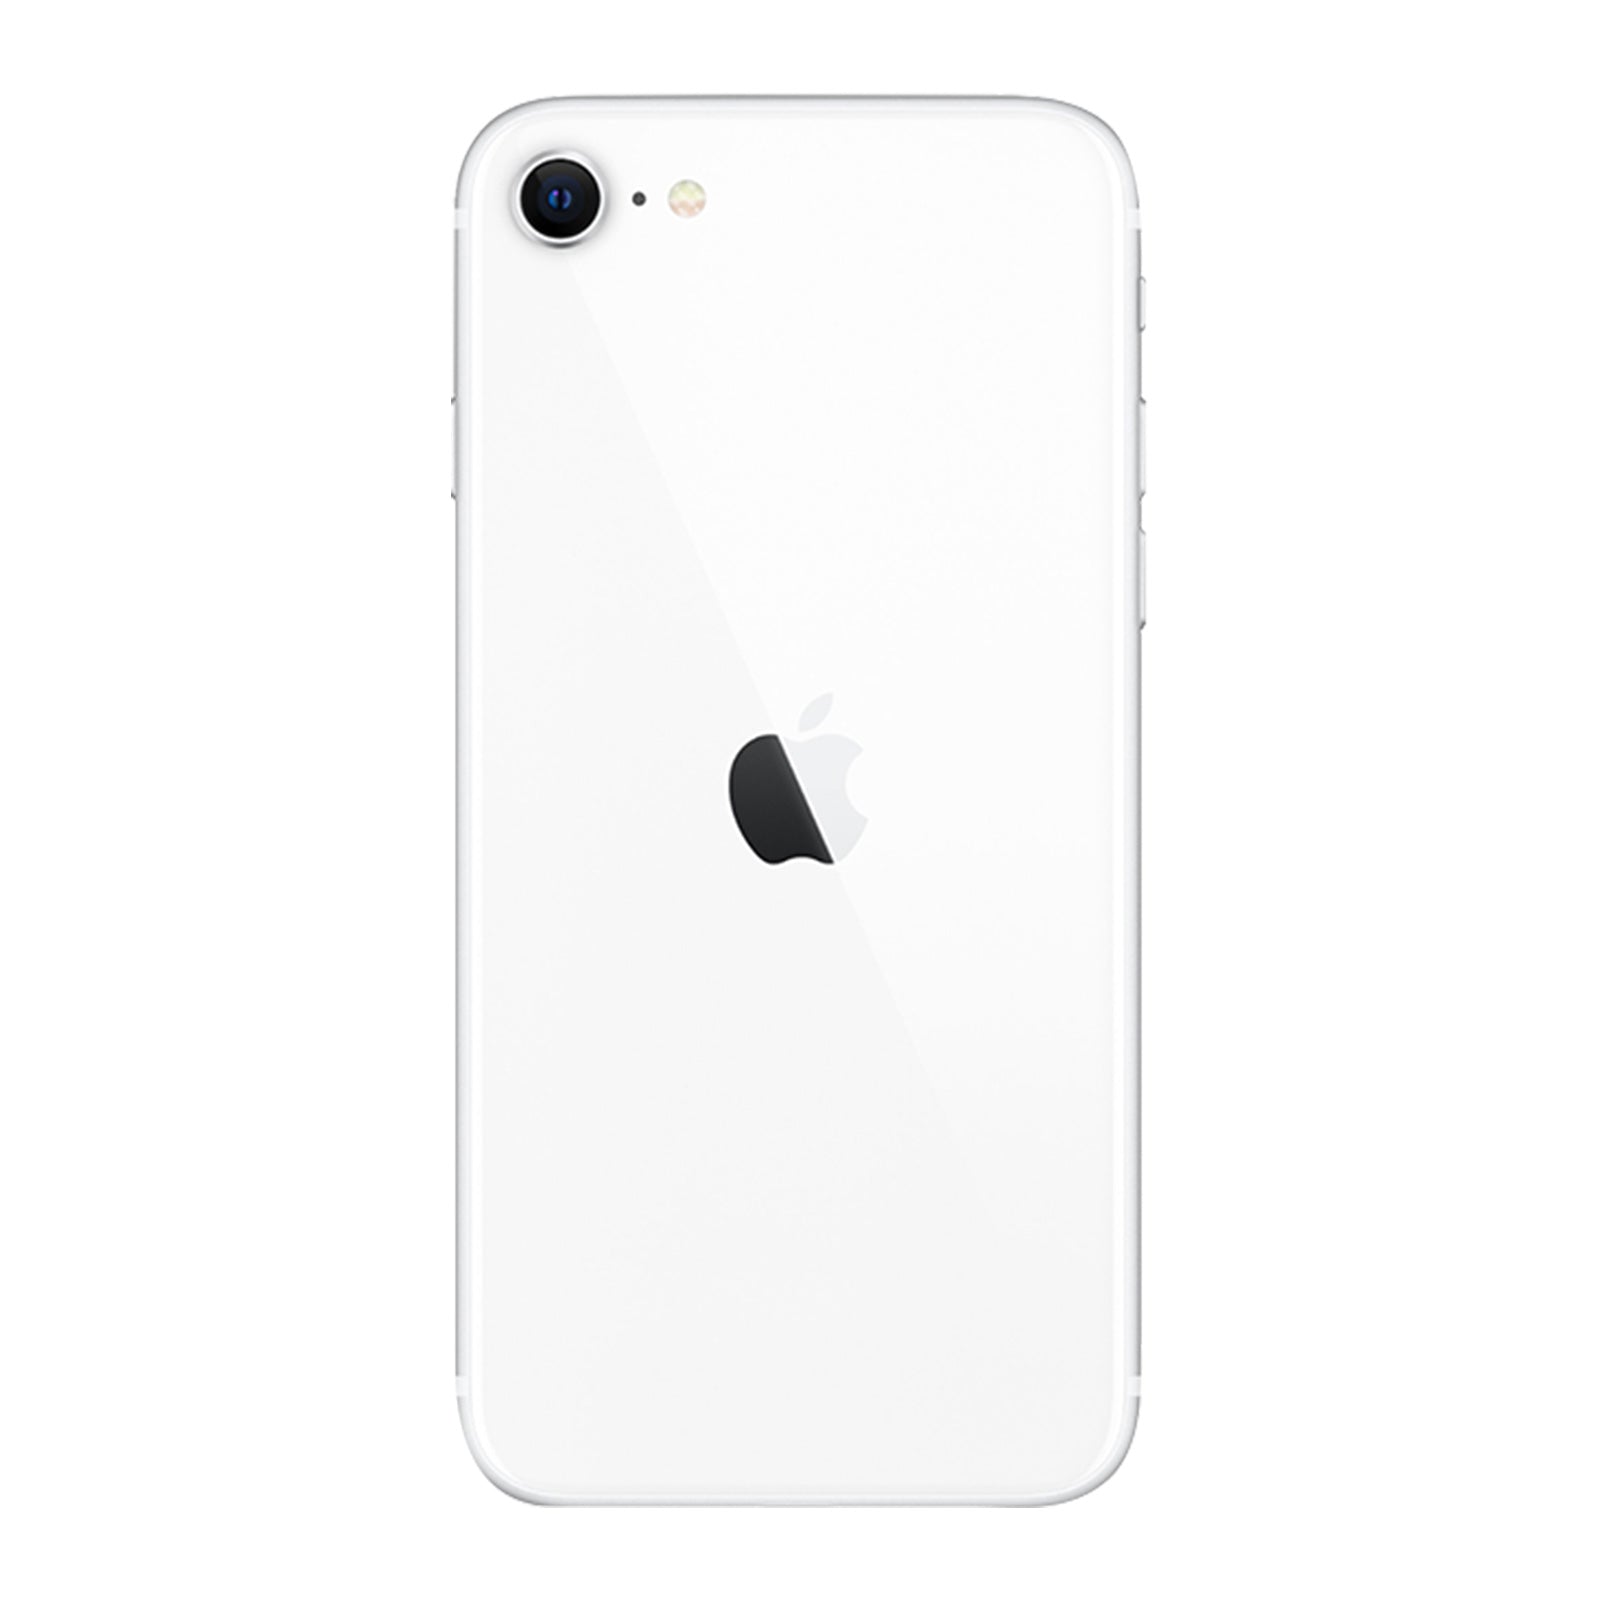 Apple iPhone SE 2nd Gen 128GB White Pristine Unlocked